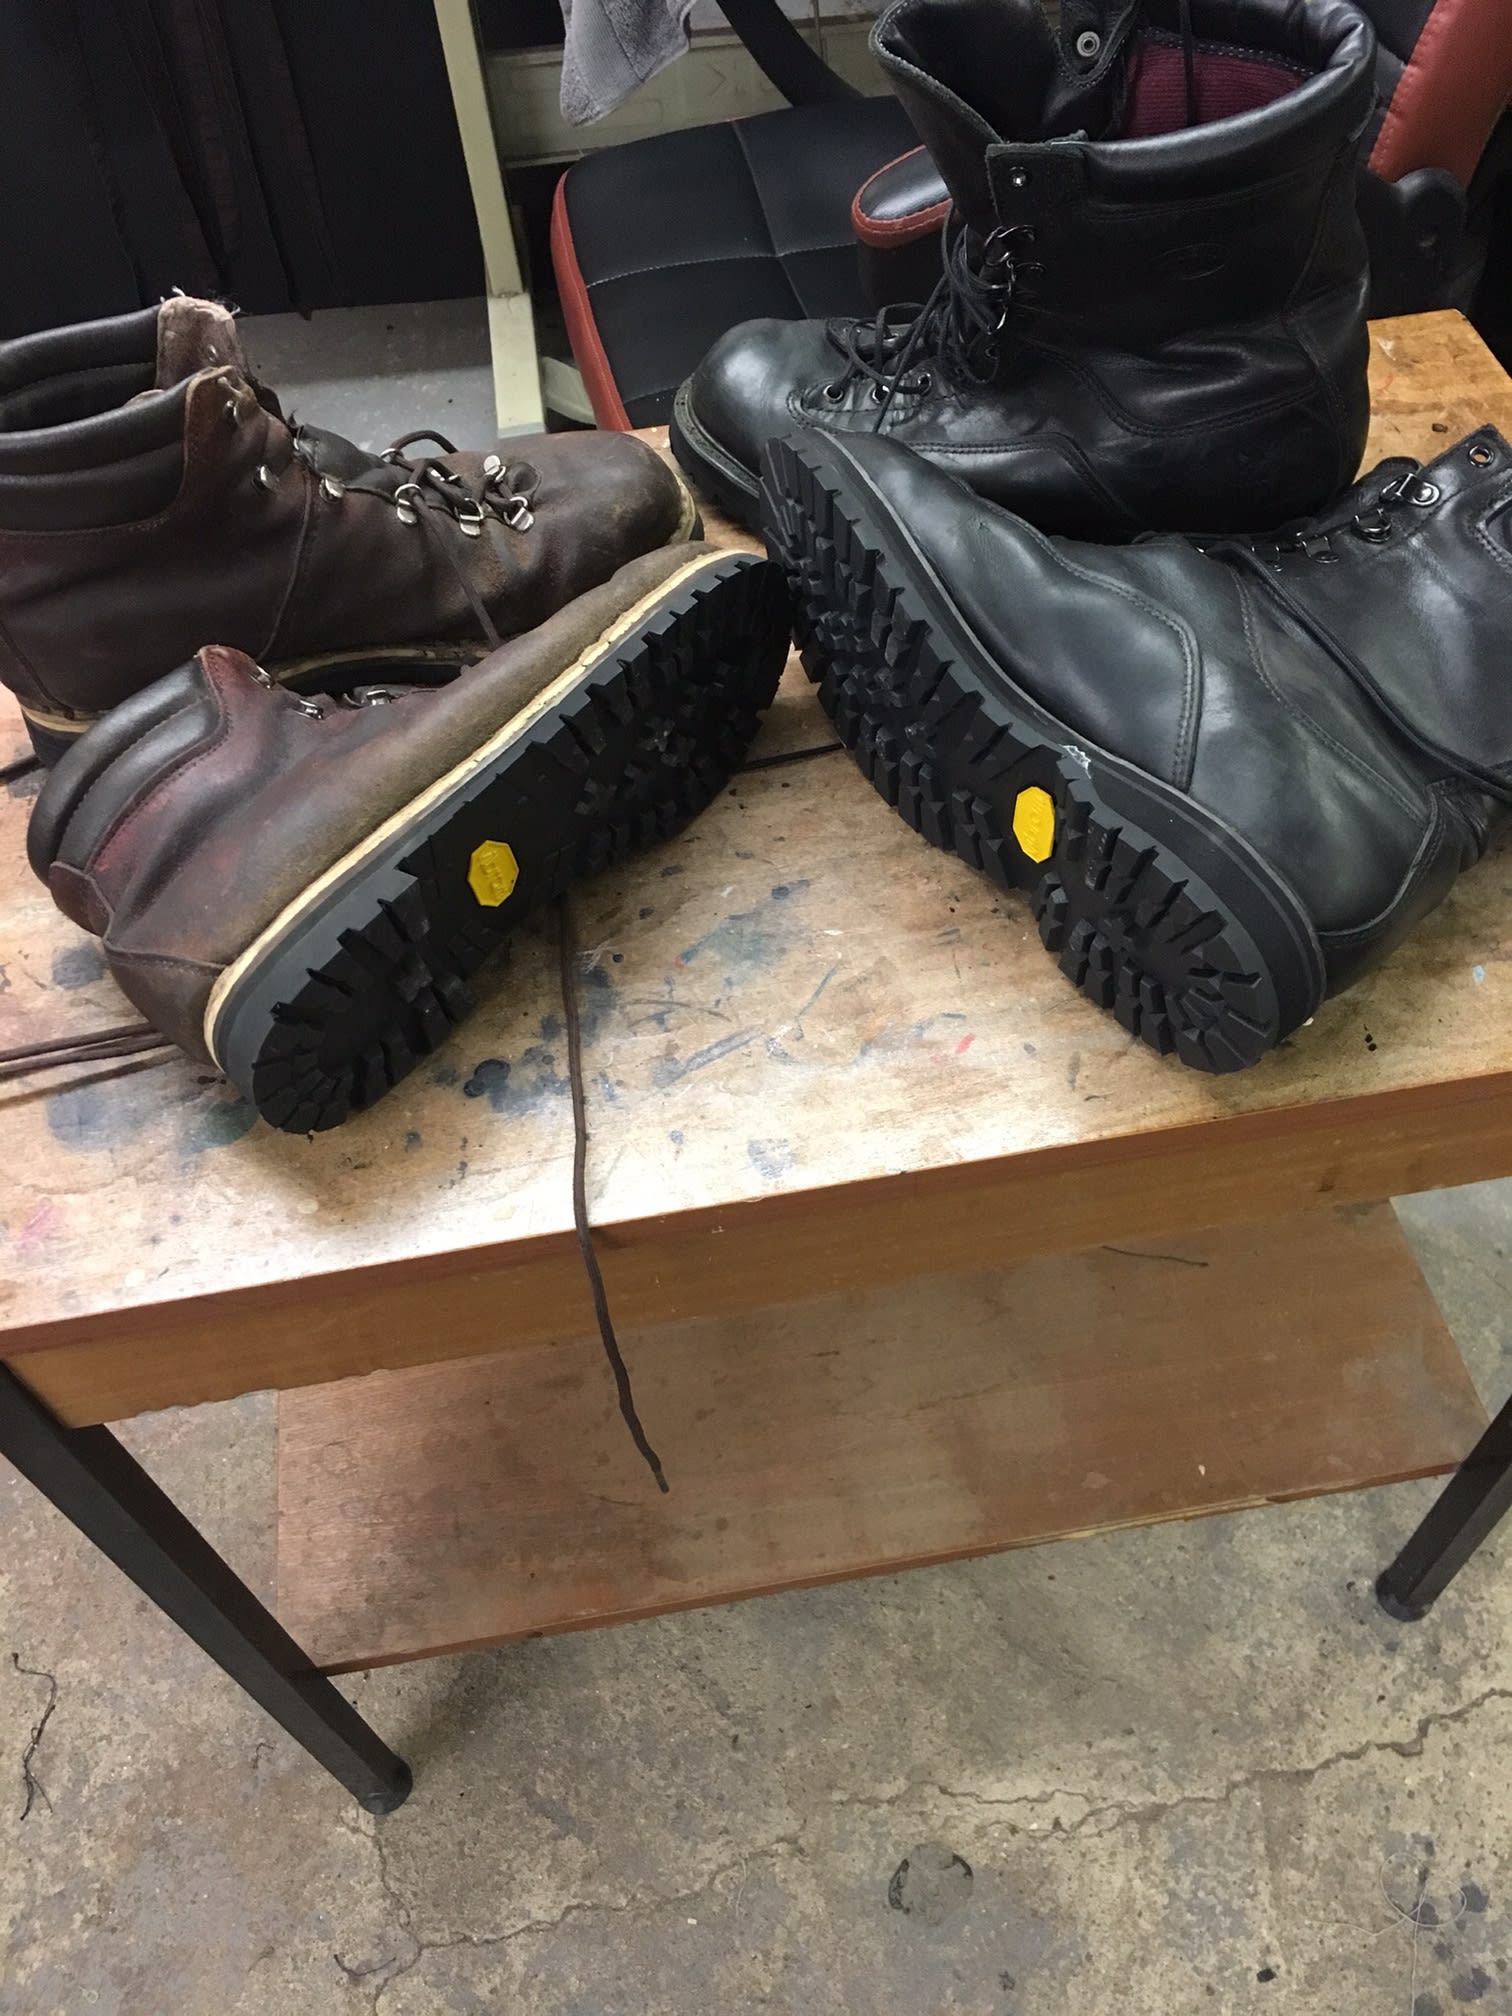 Footwear Fix Norwich 07934 539020